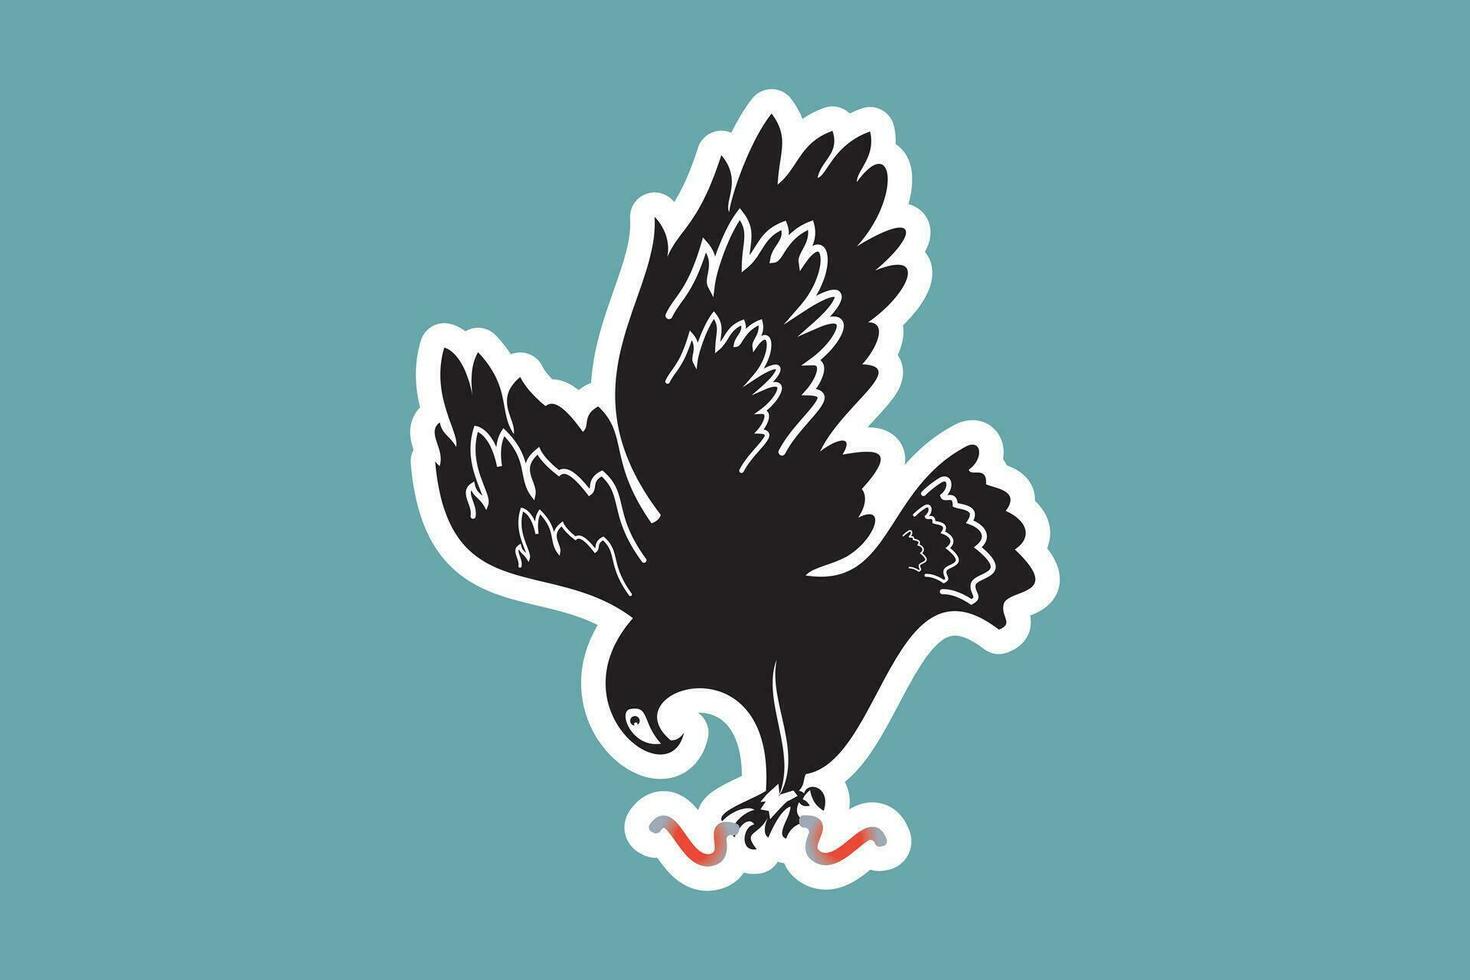 Eagle Bird logo Sticker design vector illustration. Animal nature icon concept. Bird eagle vector, eagle head logo, bird safe sticker design logo.